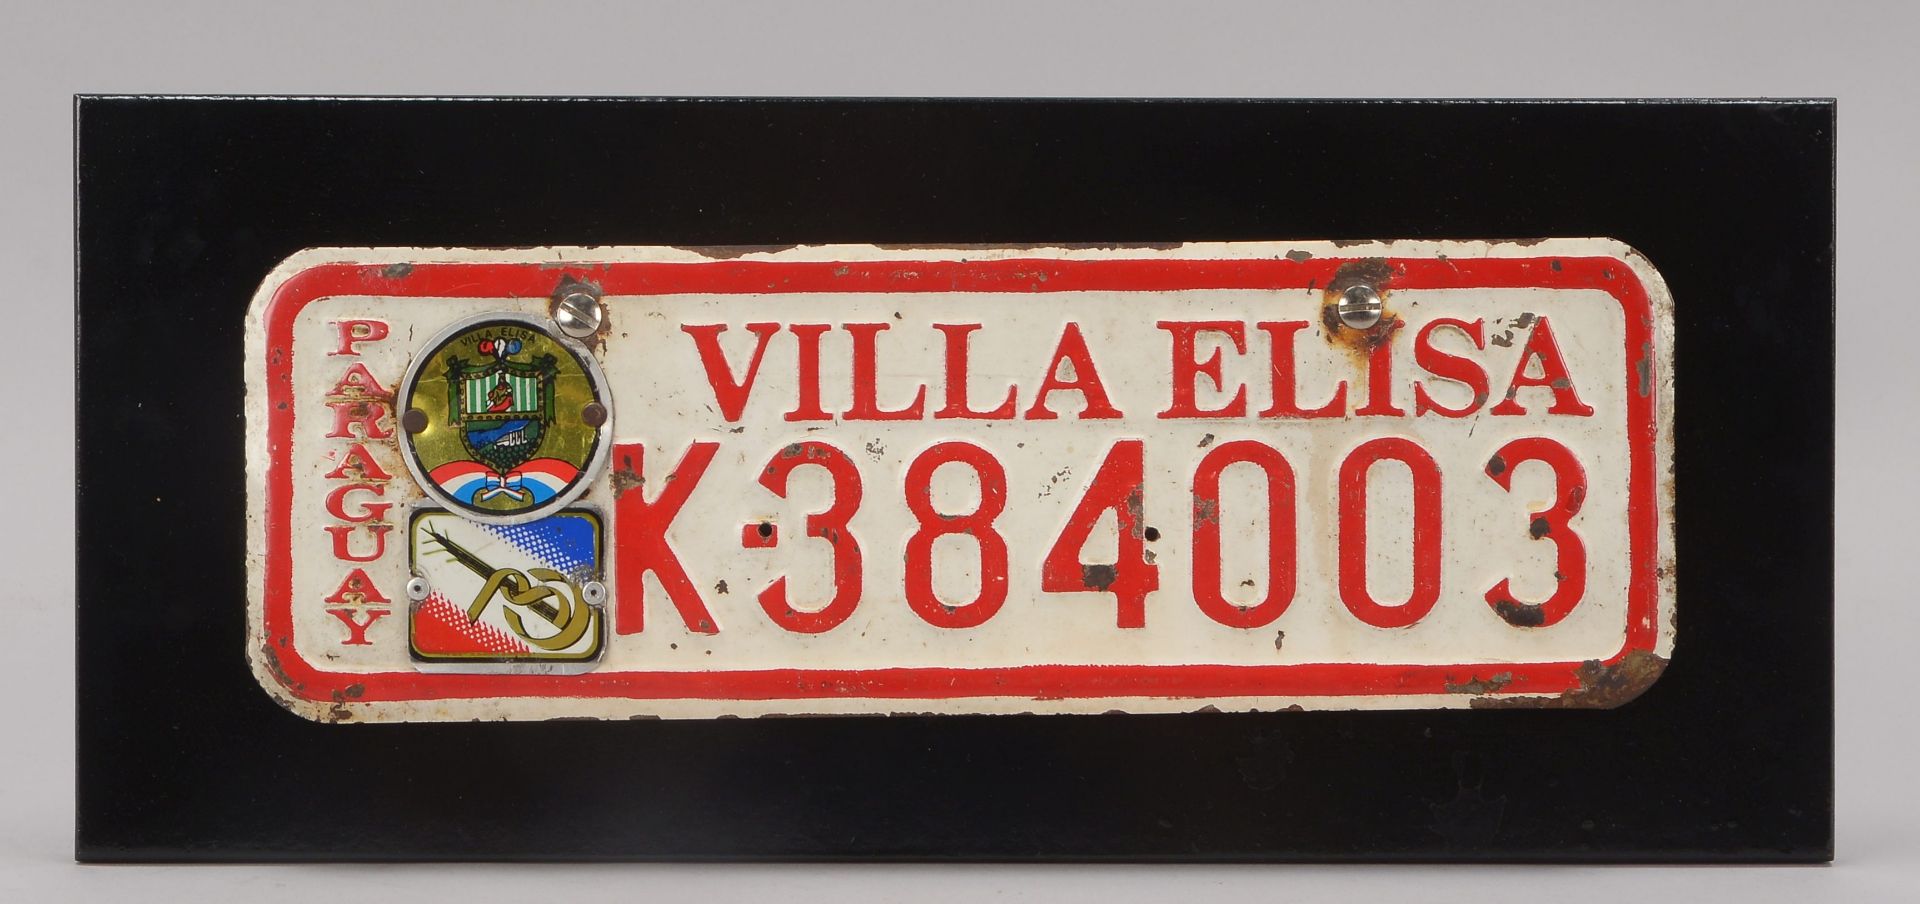 Autokennzeichen (Paraguay), -Villa Elisa K-384003-, auf Holzplinthe, Laenge 37,5 cm